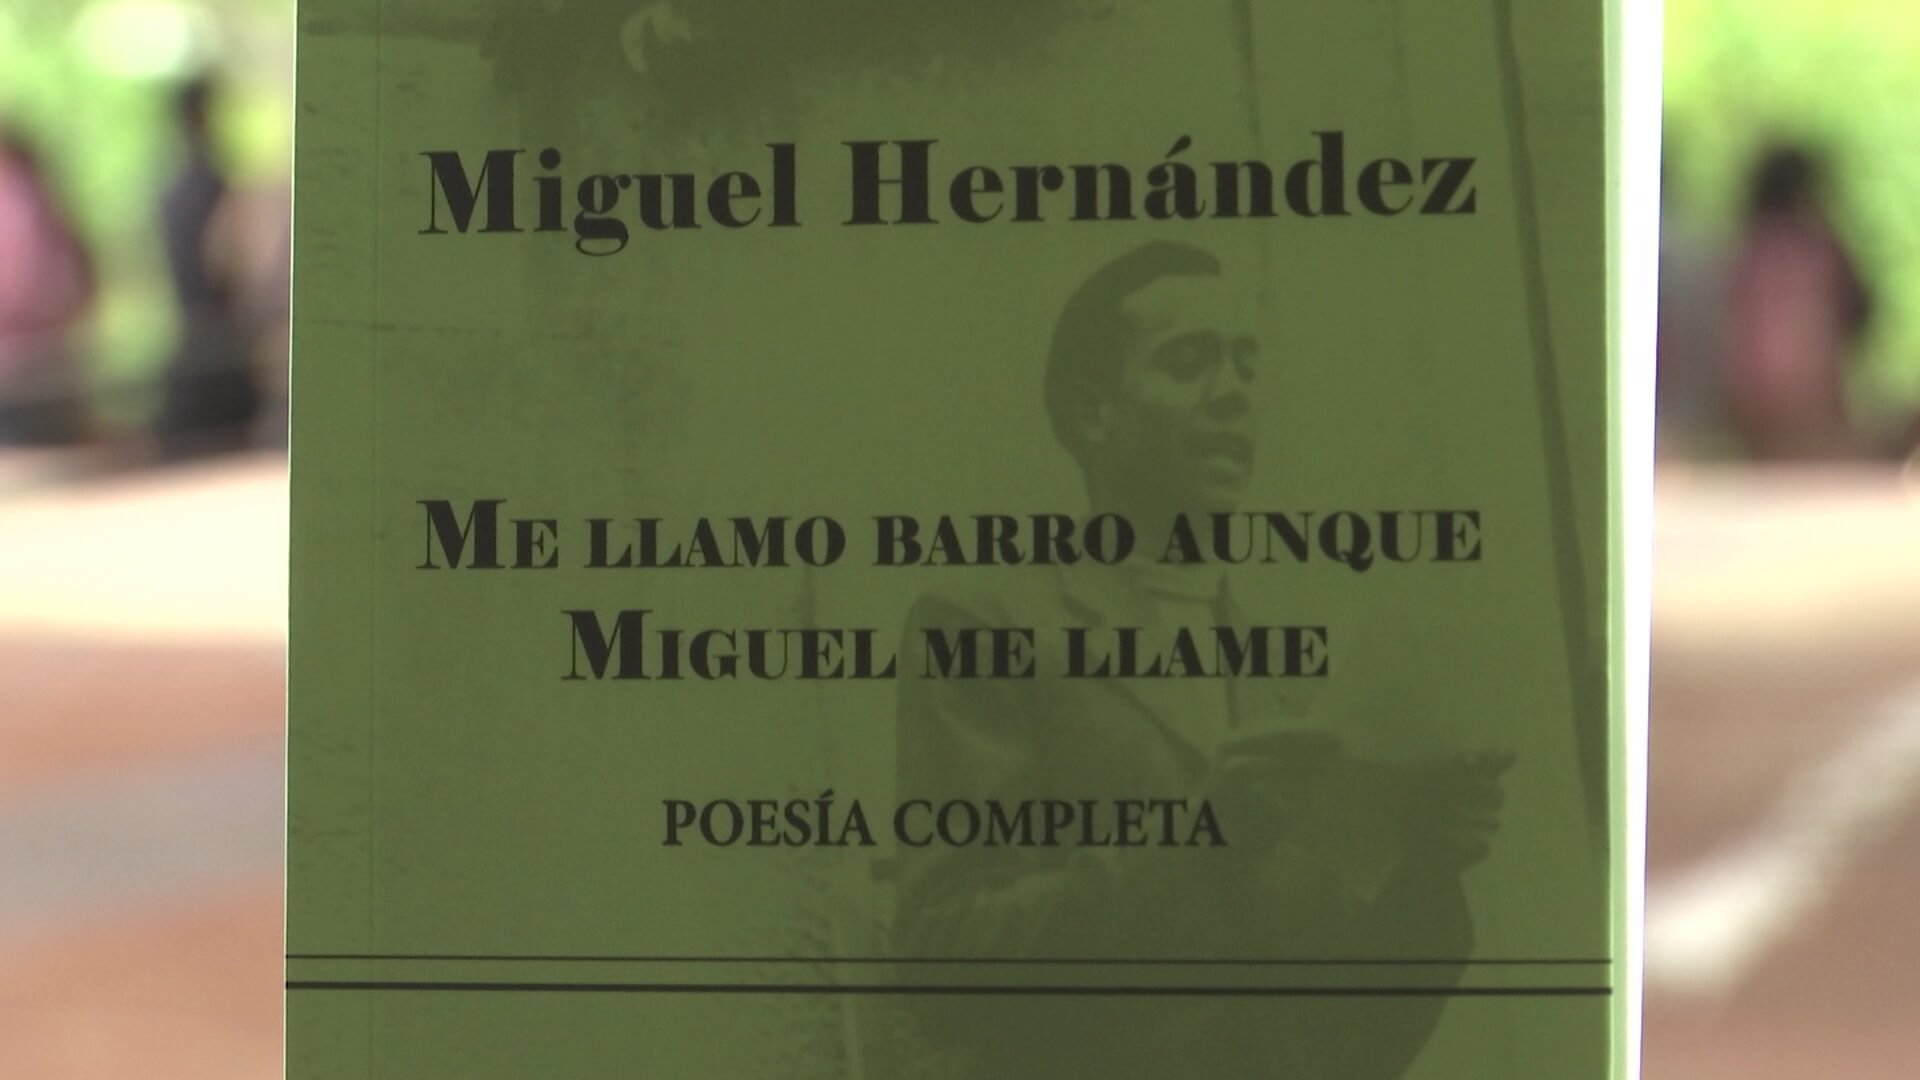 Publican obras del poeta español Miguel Hernández